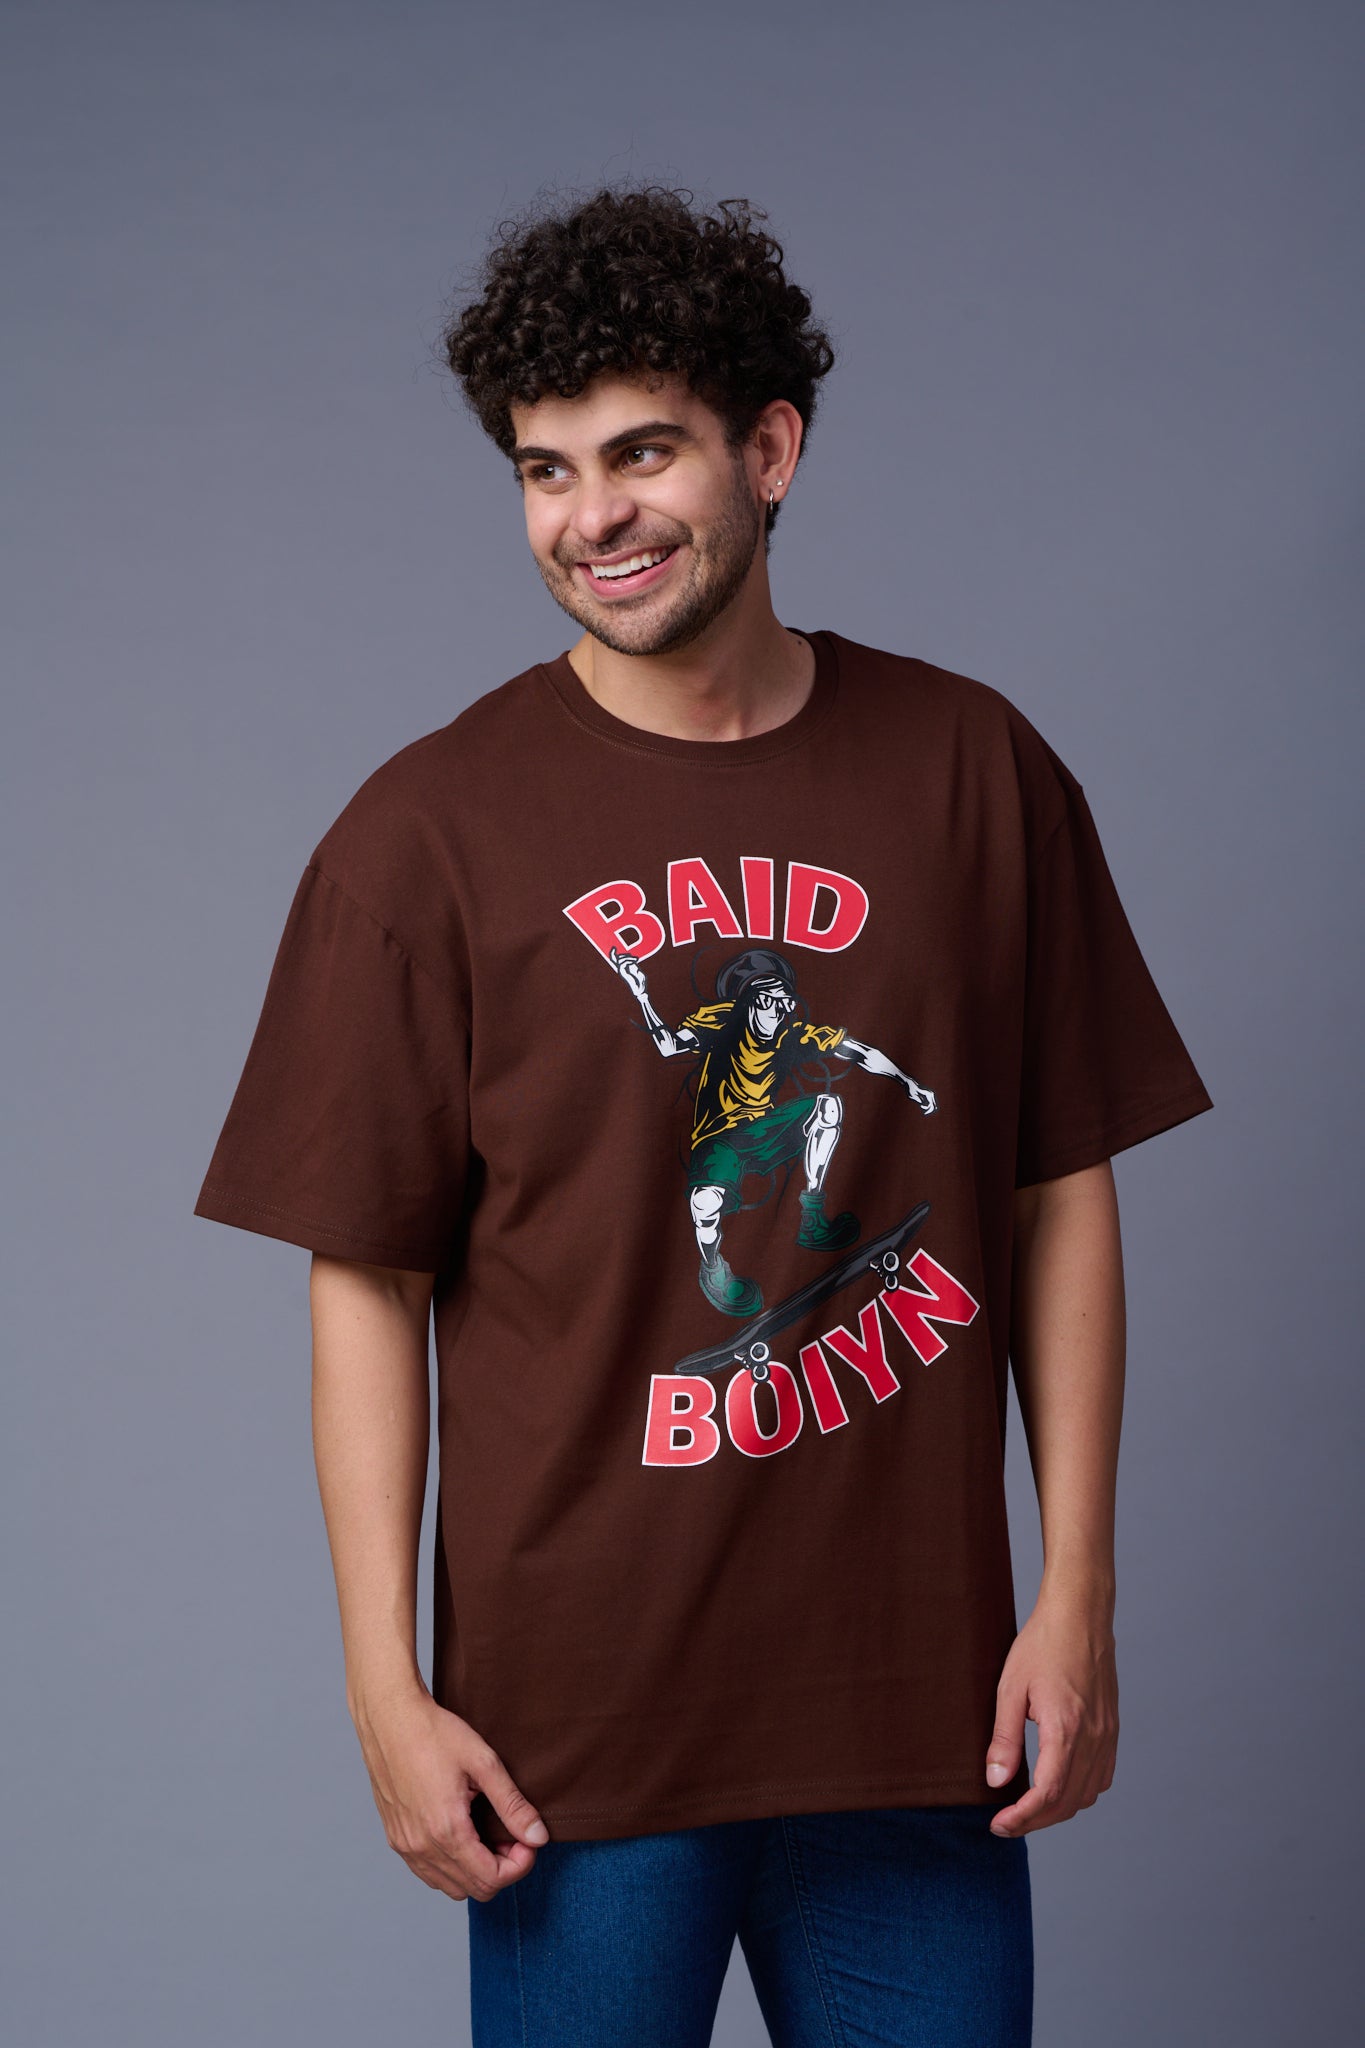 Baid Boiyn (Skater) Printed Oversized T-Shirt for Men